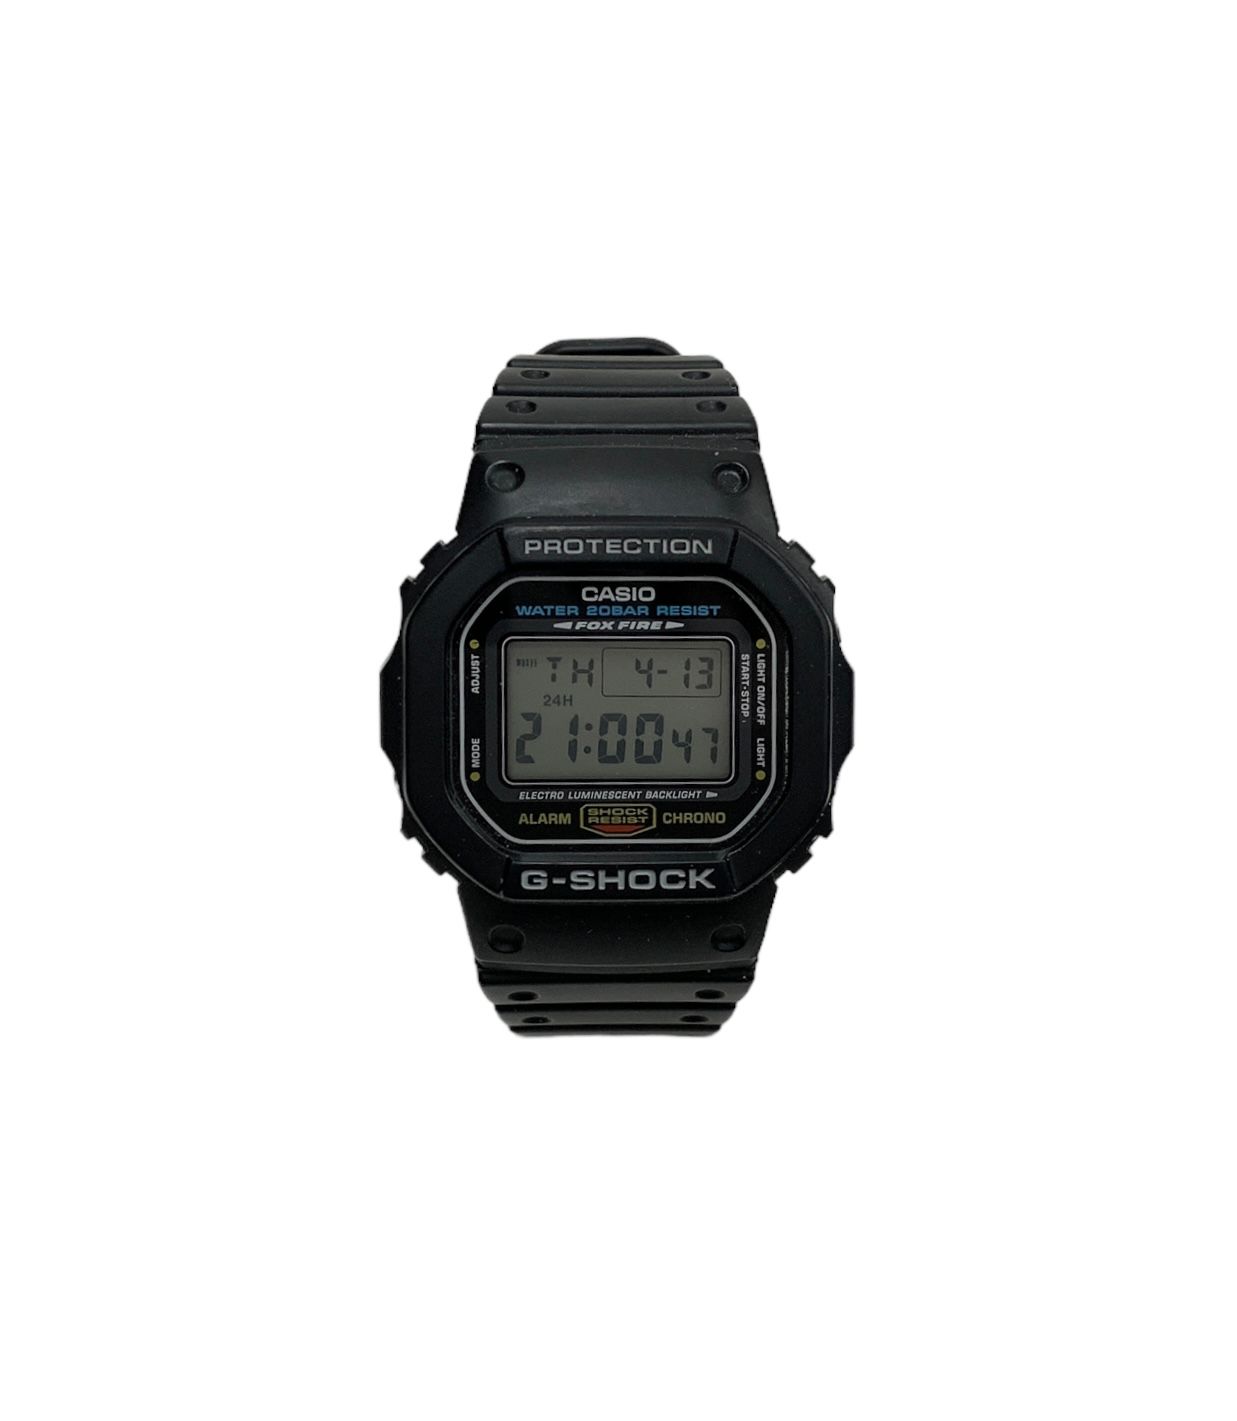 CASIO(カシオ) G-SHOCK(ジーショック) FOXFIRE(フォックスファイア) クォーツ デジタル腕時計 DW-5600E ブラック メンズ/025 